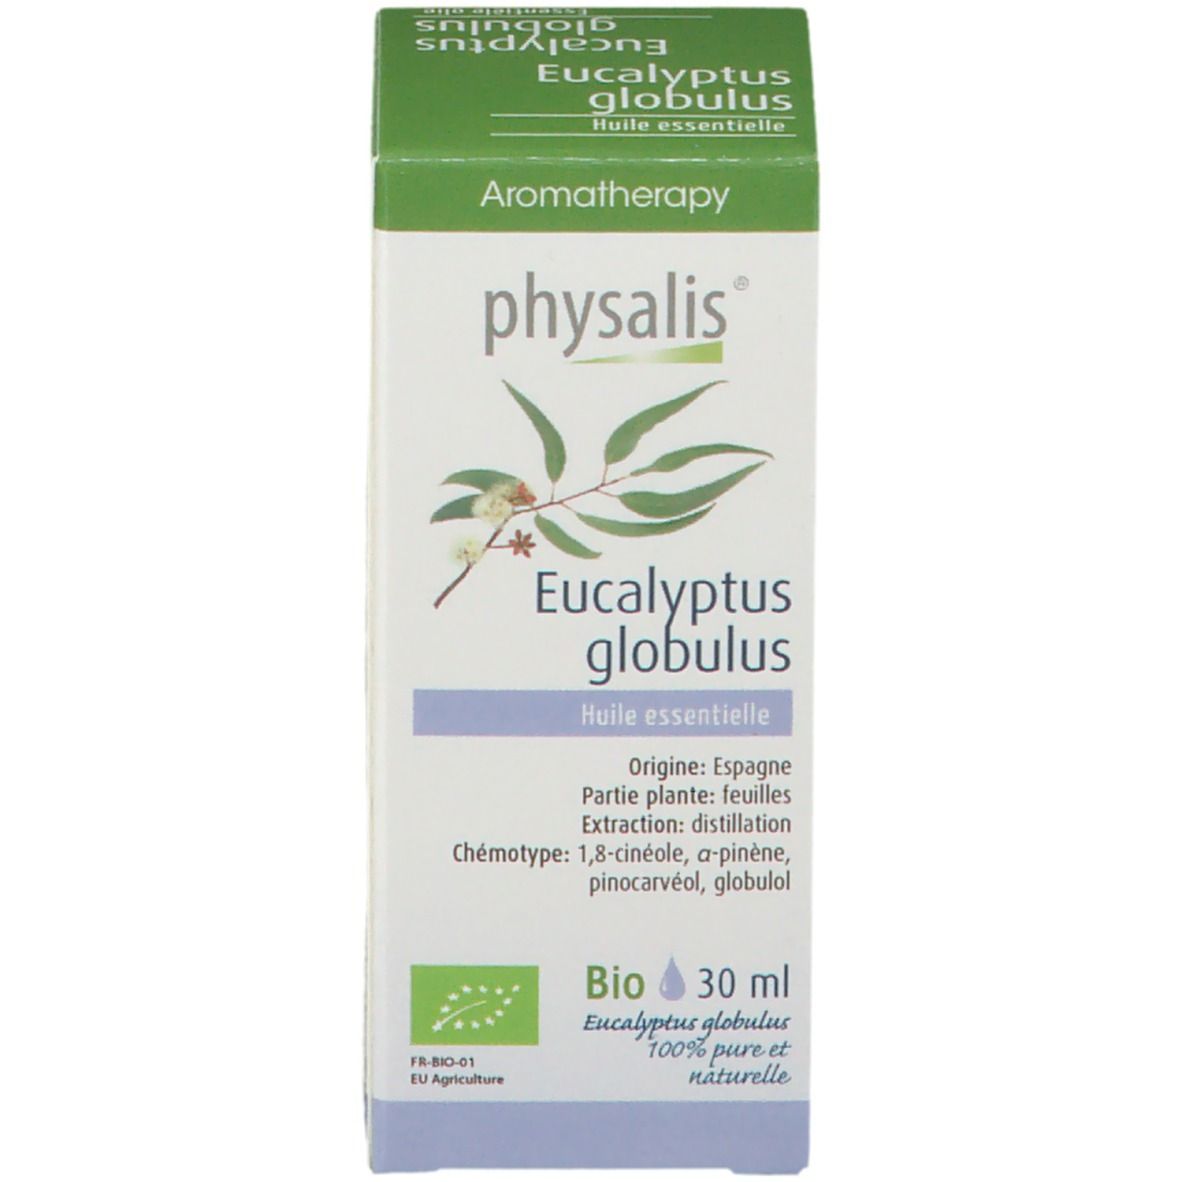 Physalis® Eucalyptus Globulus Bio